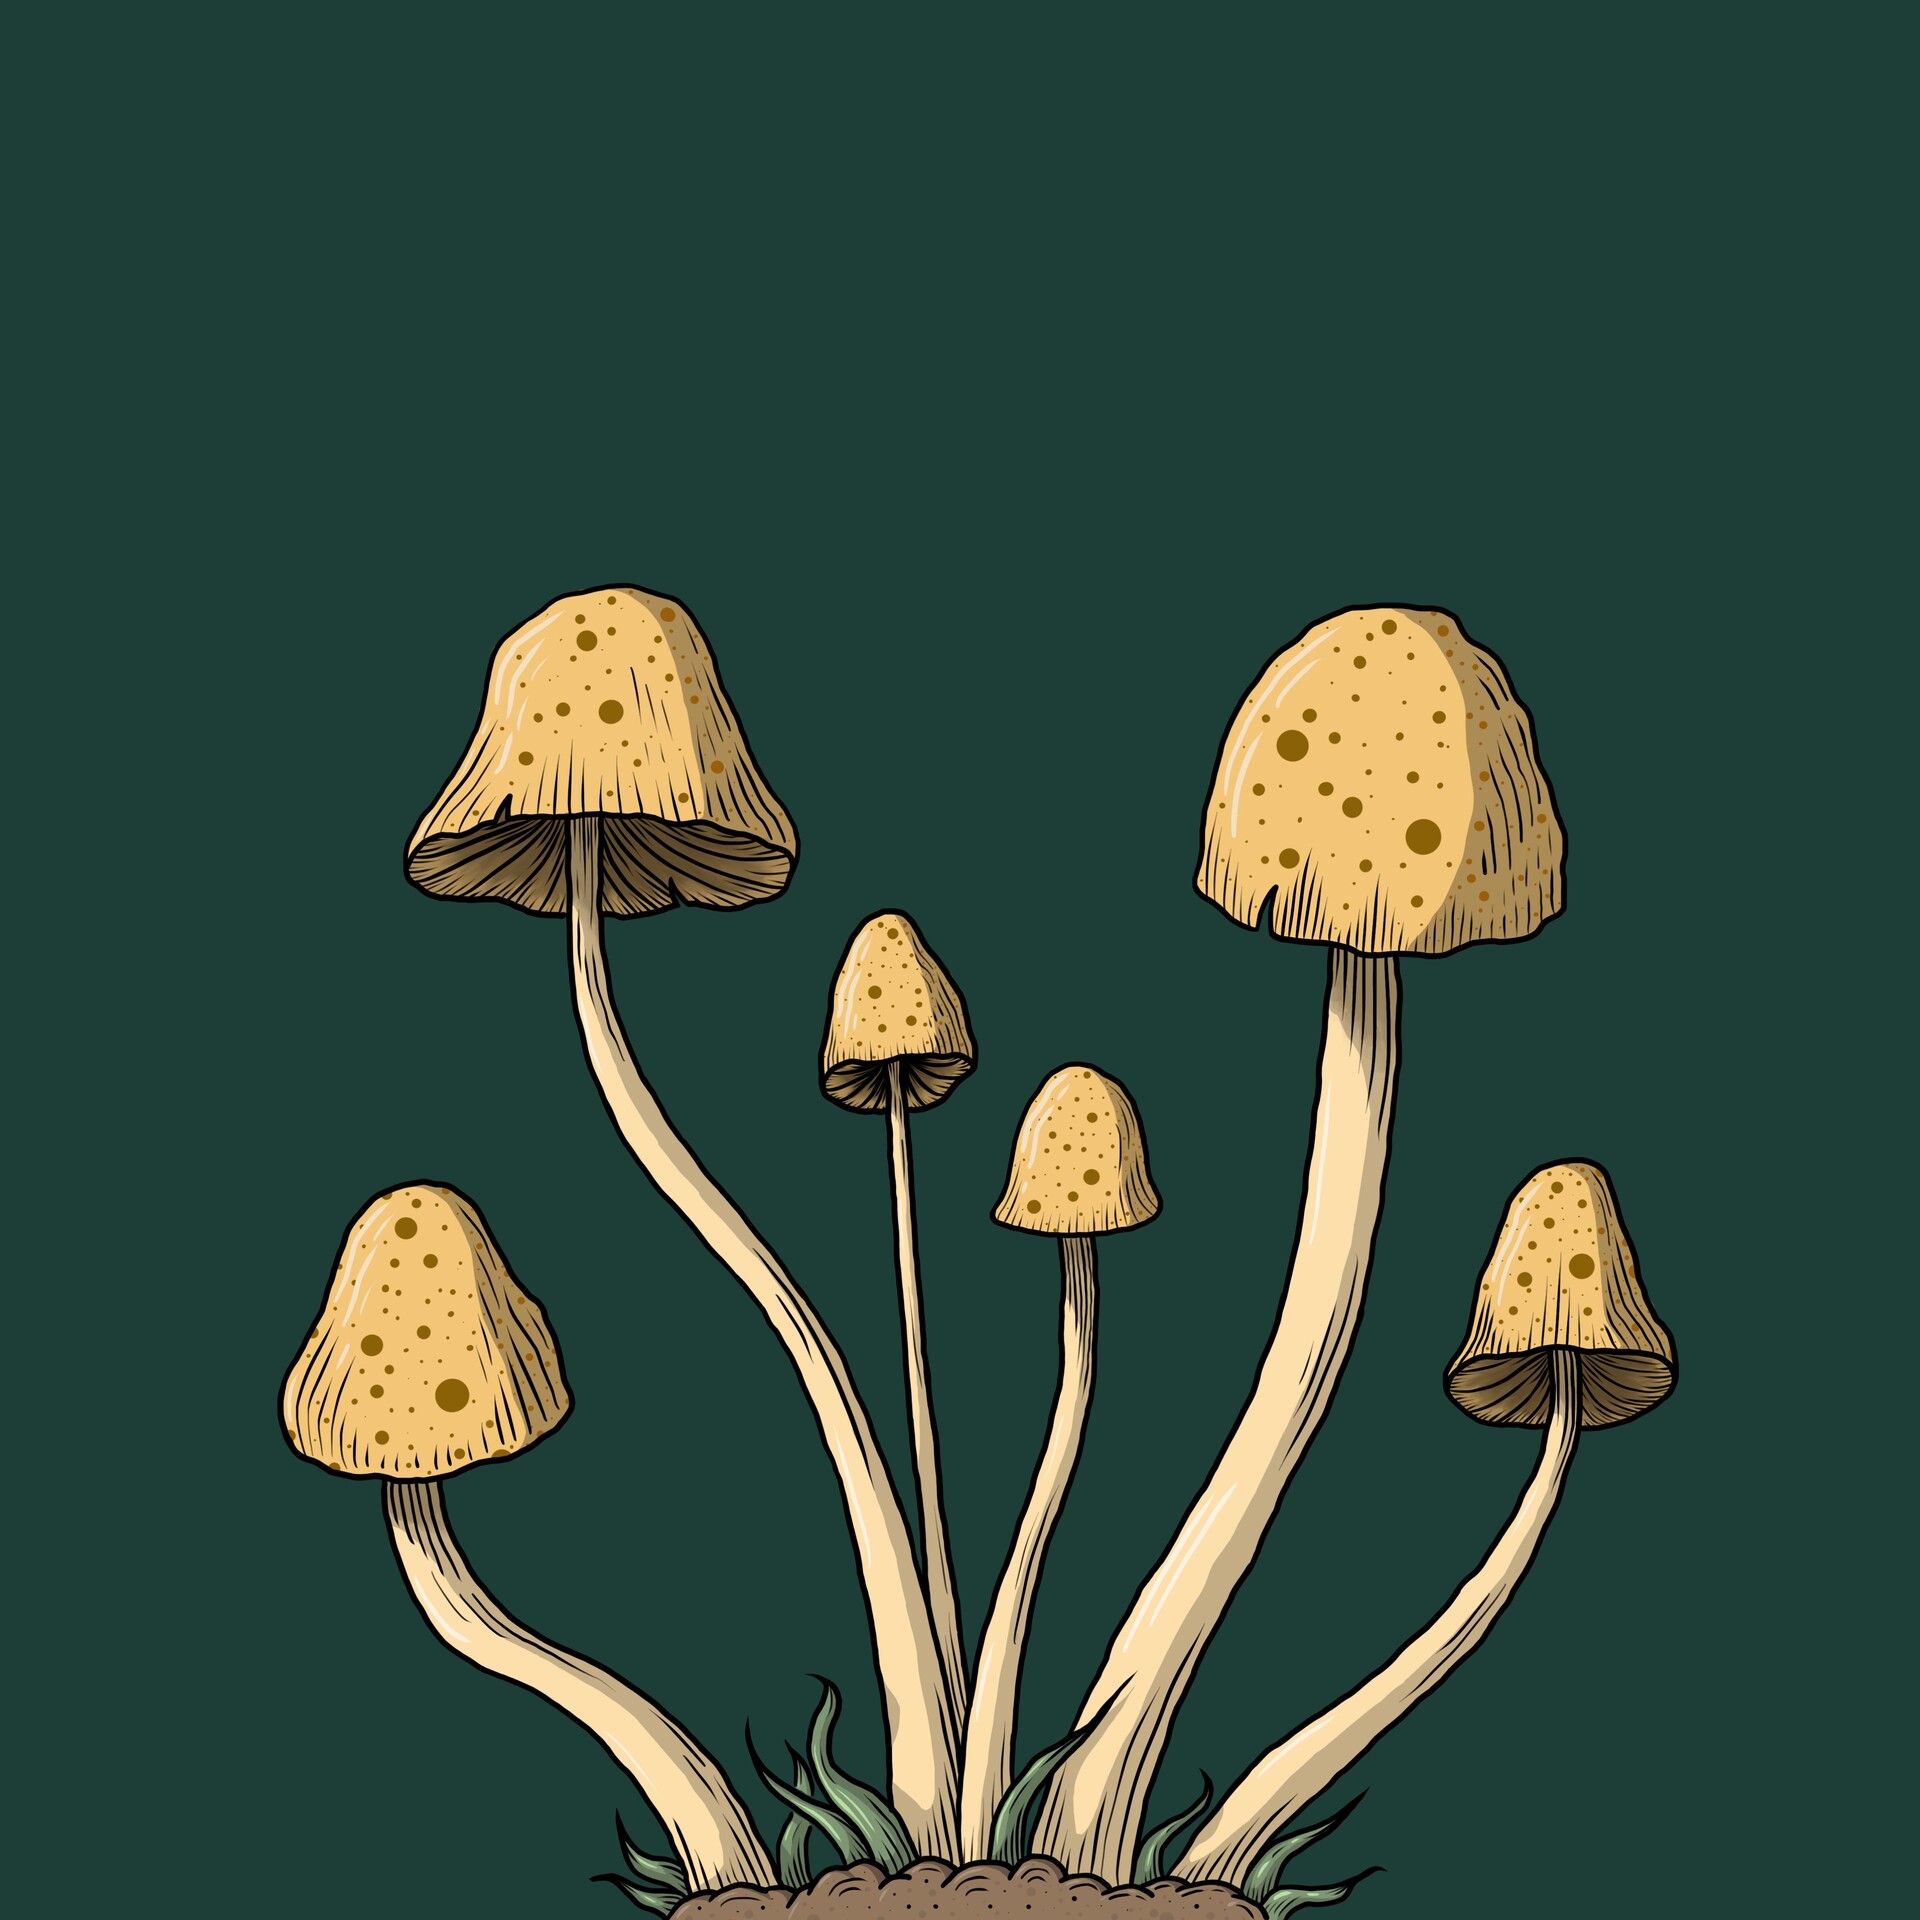 ArtStation - Mushrooms